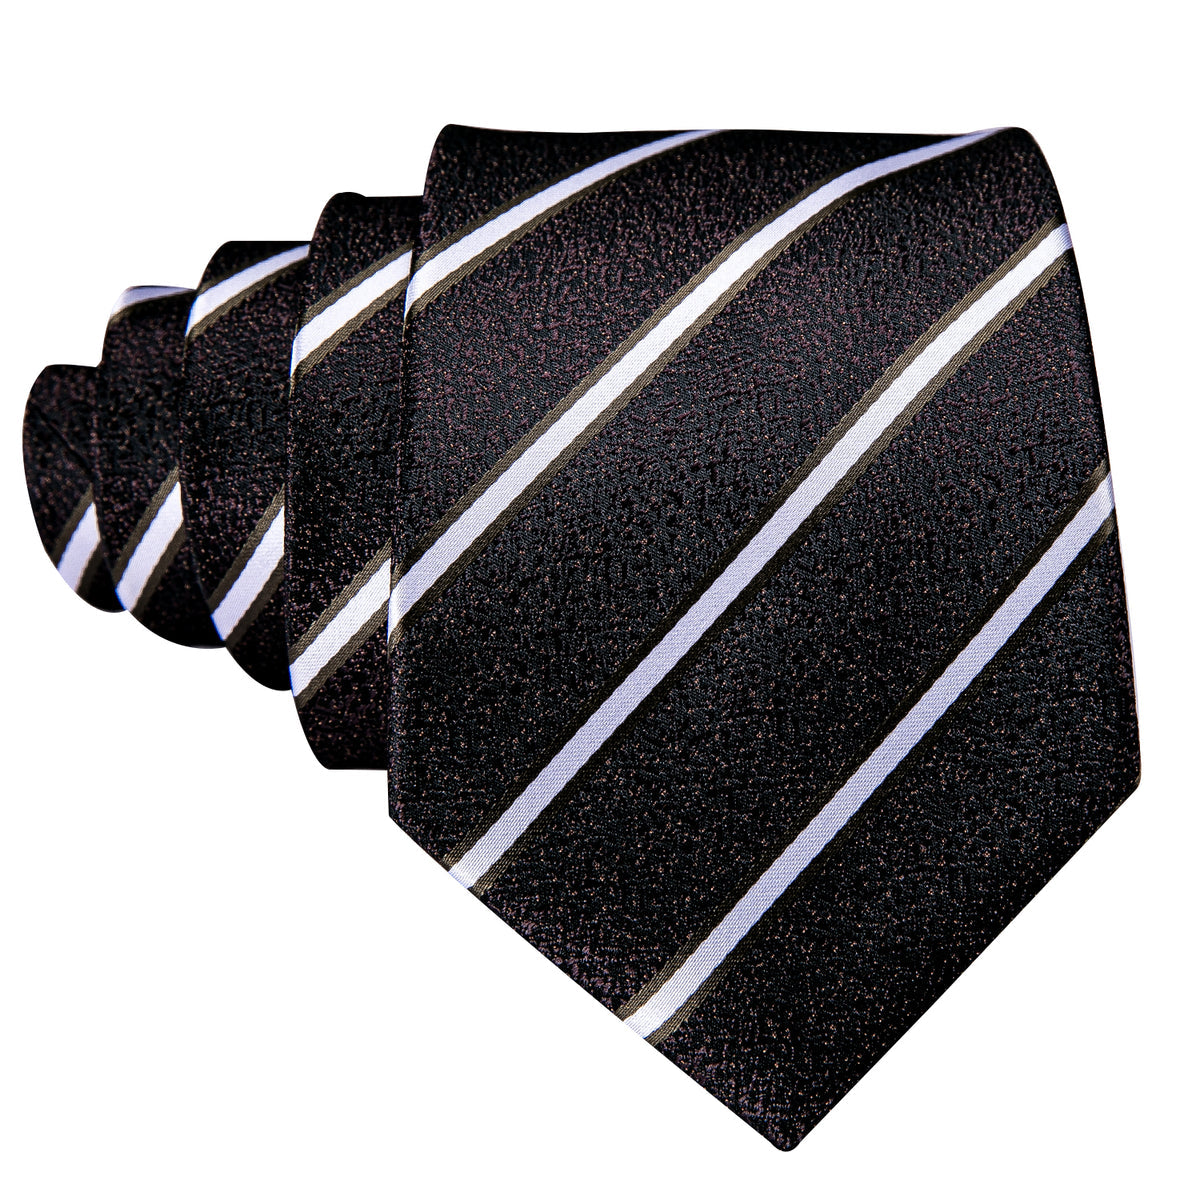 Men’s Silk Coordinated Tie Set - Black White Striped (5301)